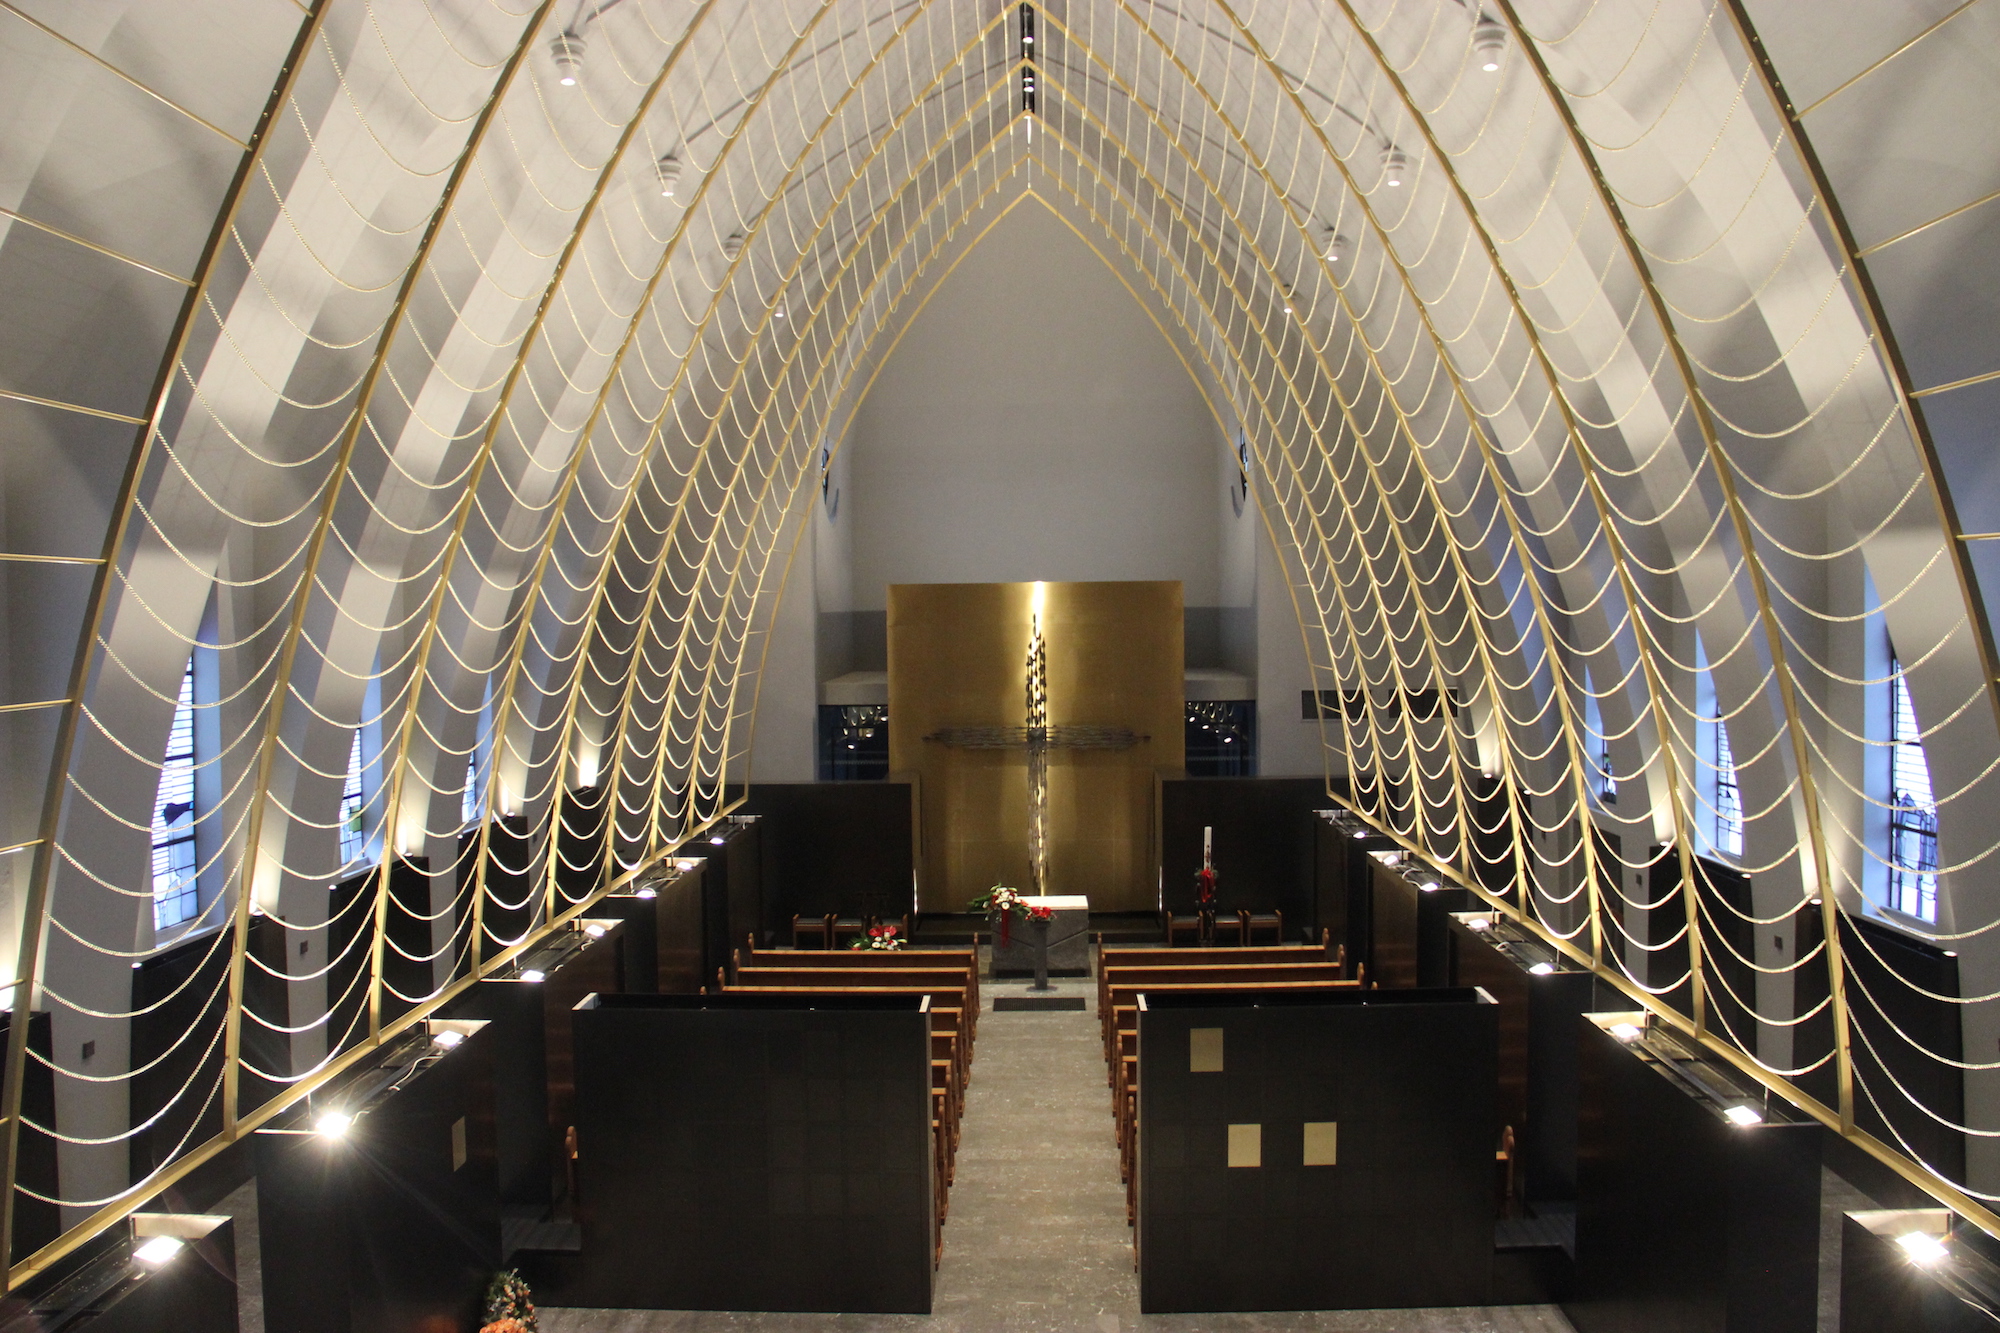 Wie ein Netz aus Licht spannen sich von unten angestrahlte Messingketten über die Kapelle.